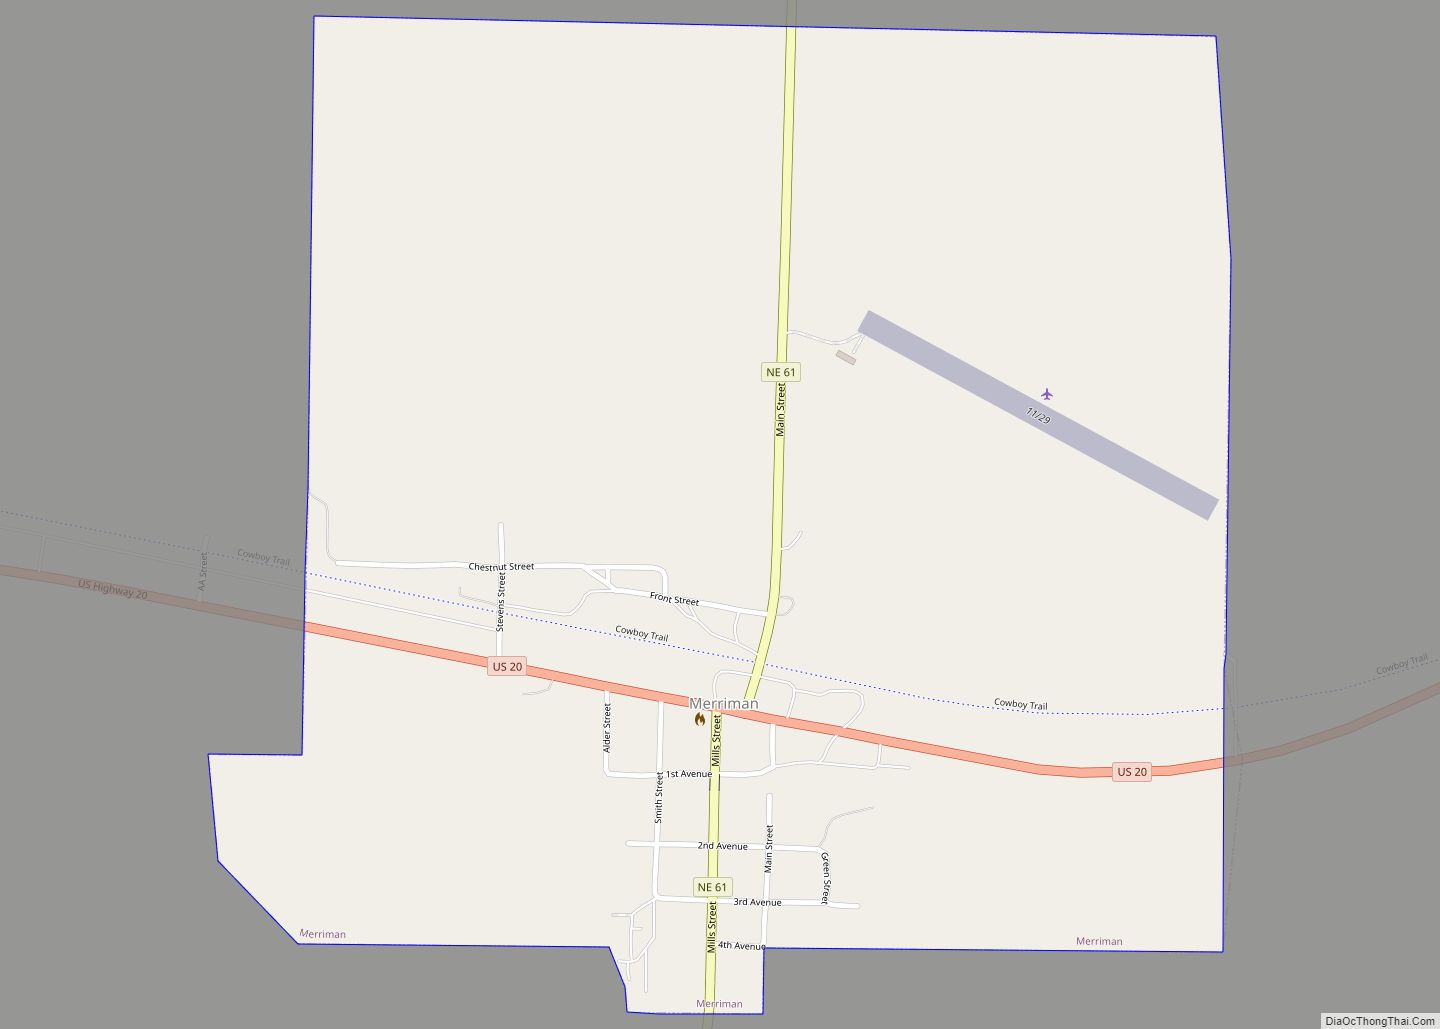 Map of Merriman village